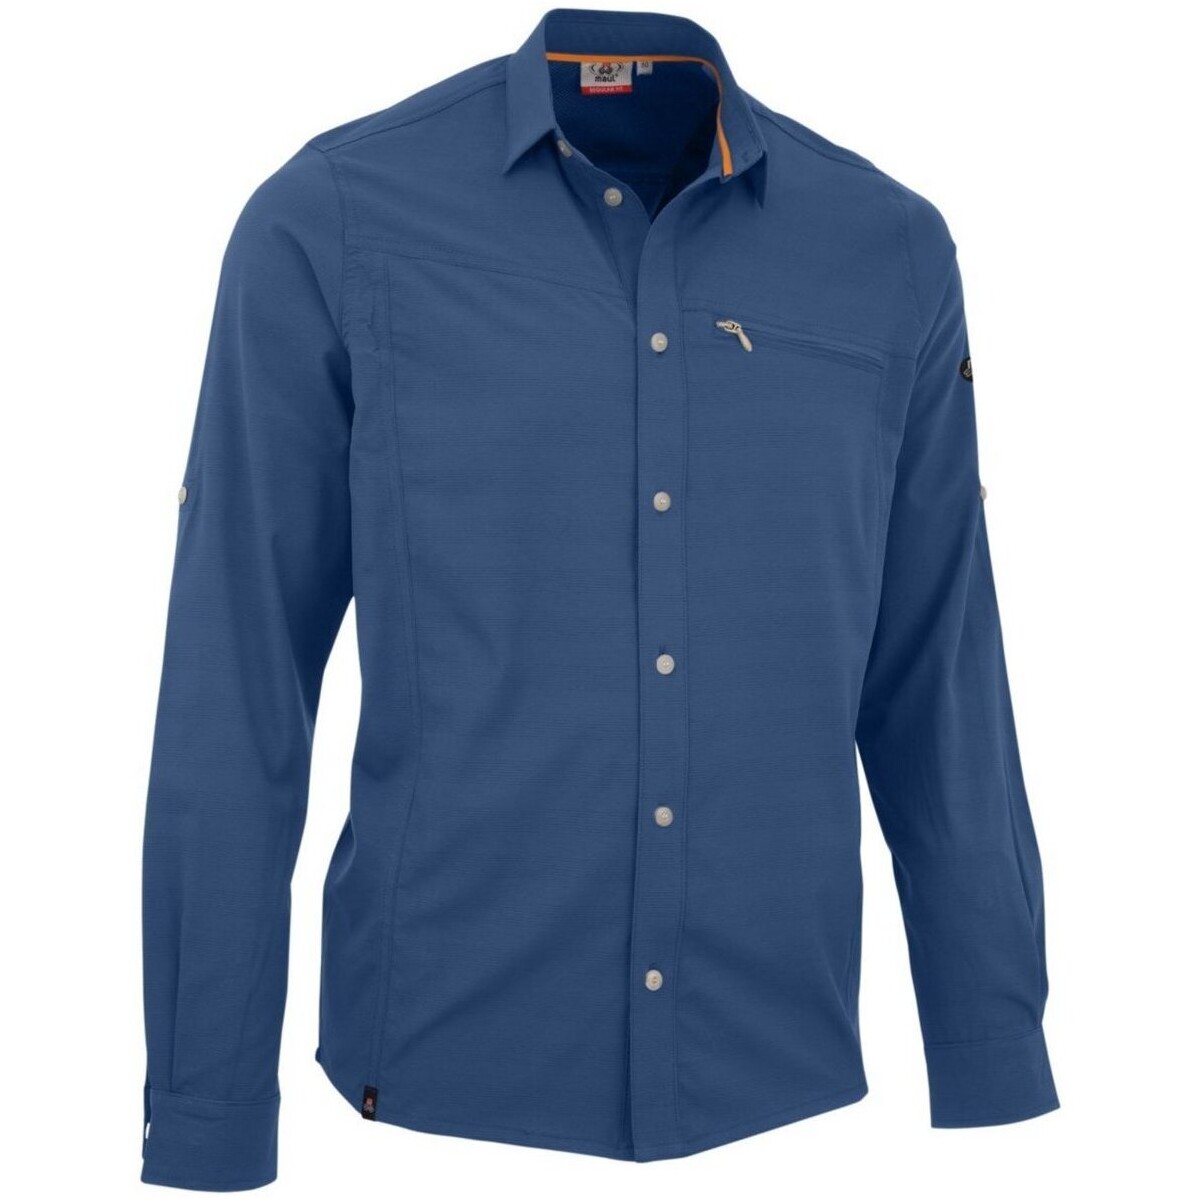 Kleidung Herren T-Shirts & Poloshirts Maui Sports Sport Lechnerkopf 1/1-1/1 Hemd elast blue 4730900403/73 73-73 Blau